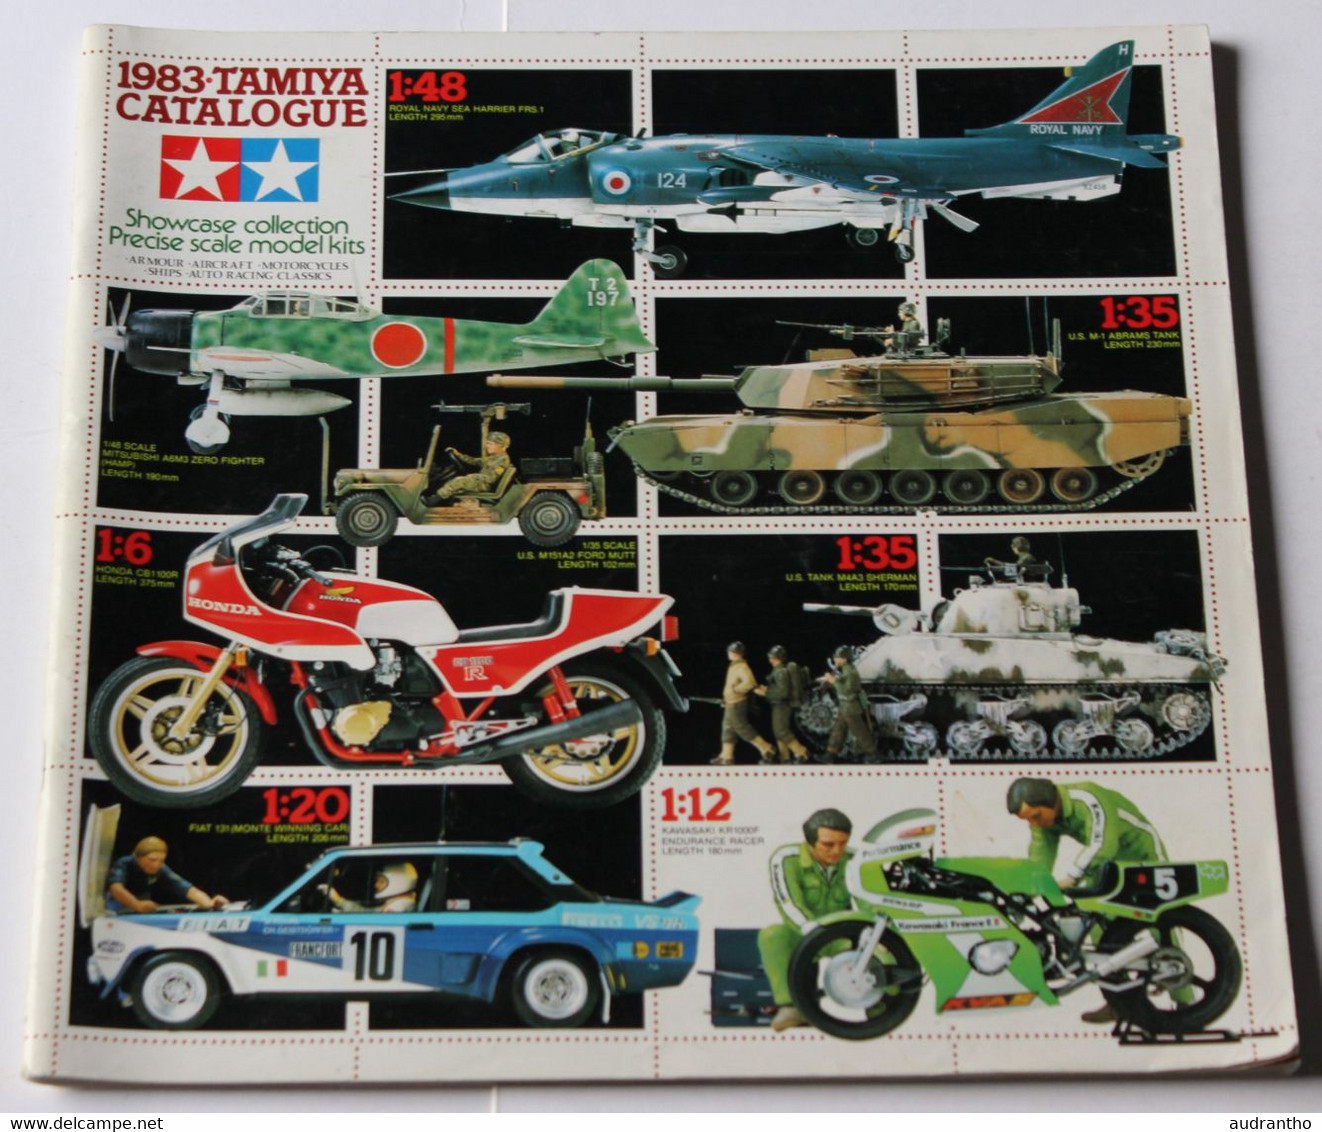 Catalogue De Modélisme 1983 Tamiya Motos Voitures F1 Militaria Aviation - Literature & DVD